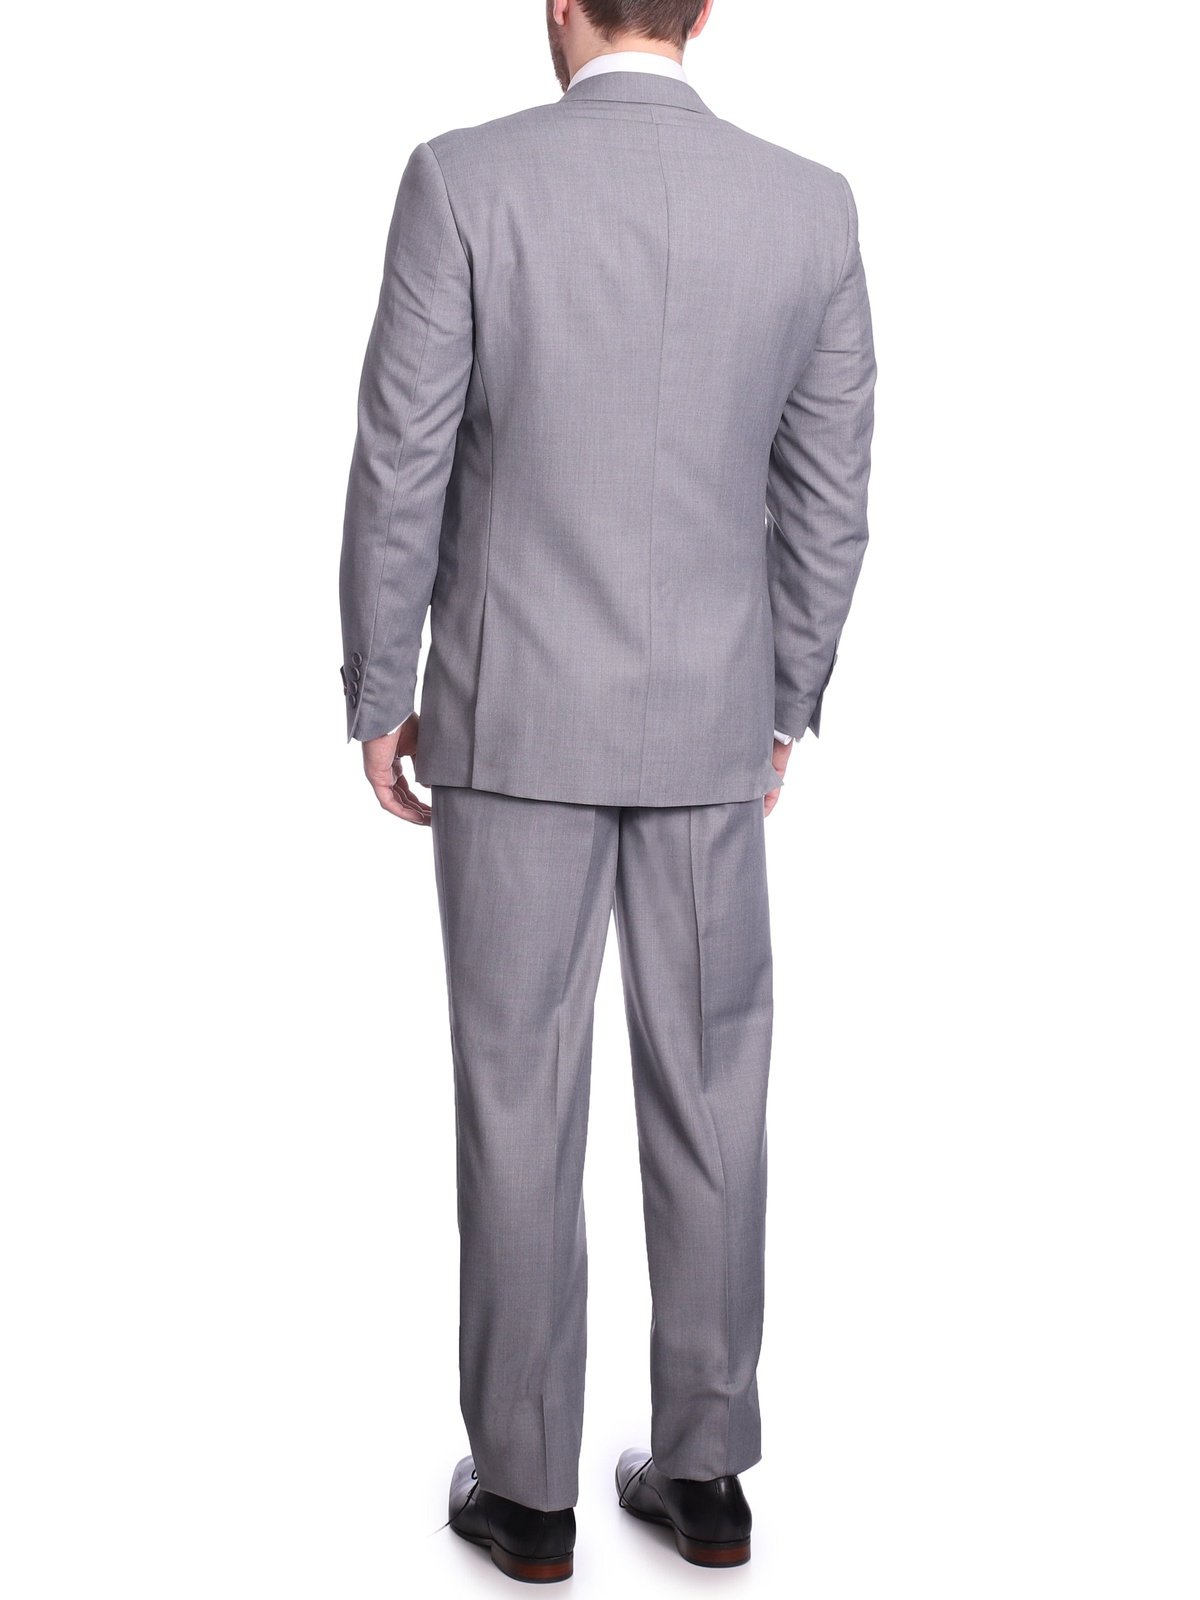 Men's 2 Piece Suits - Two Piece Suits For Men, two piece suit 